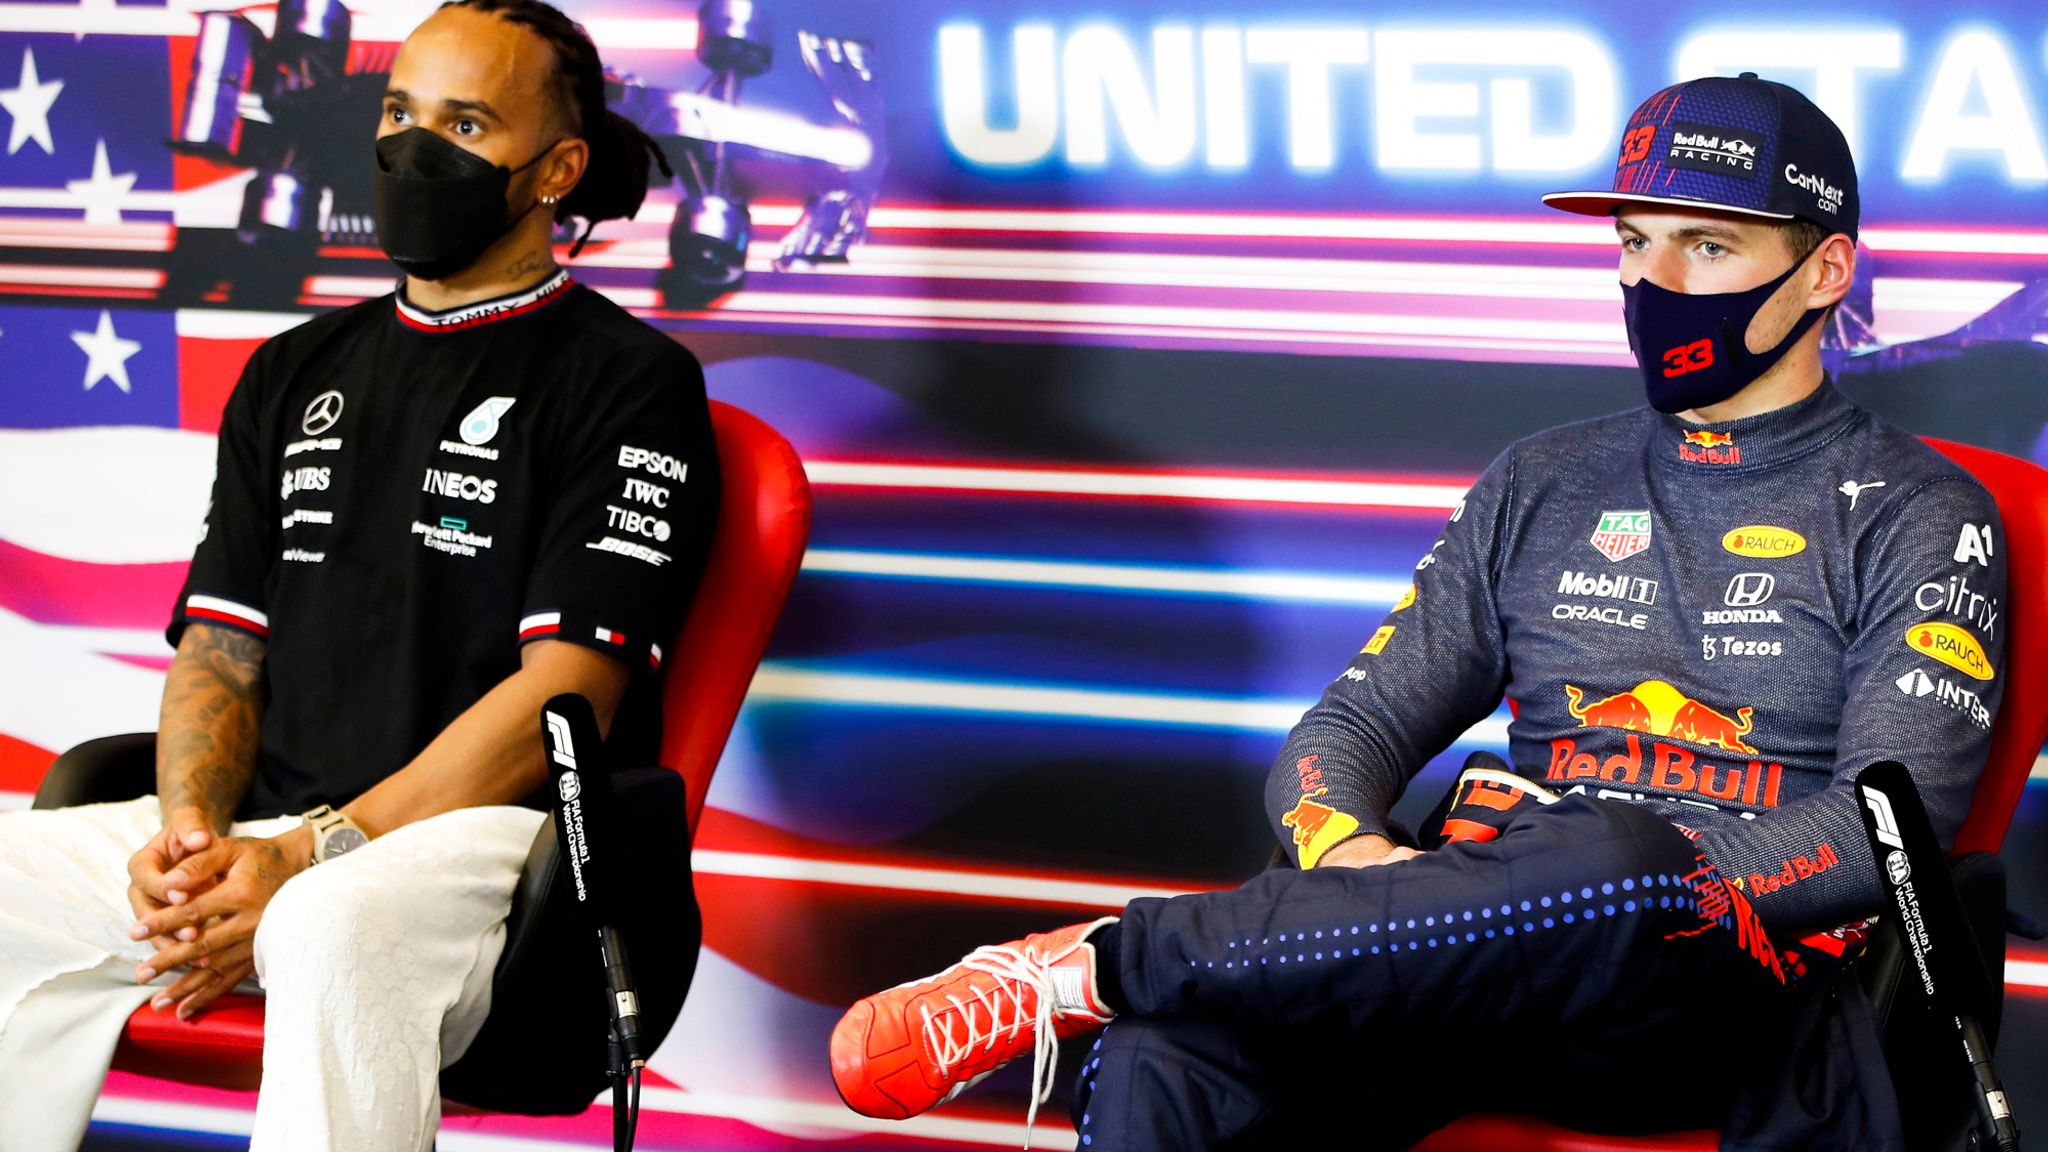 Max Verstappen sulla rivalità con Lewis Hamilton - GPblog